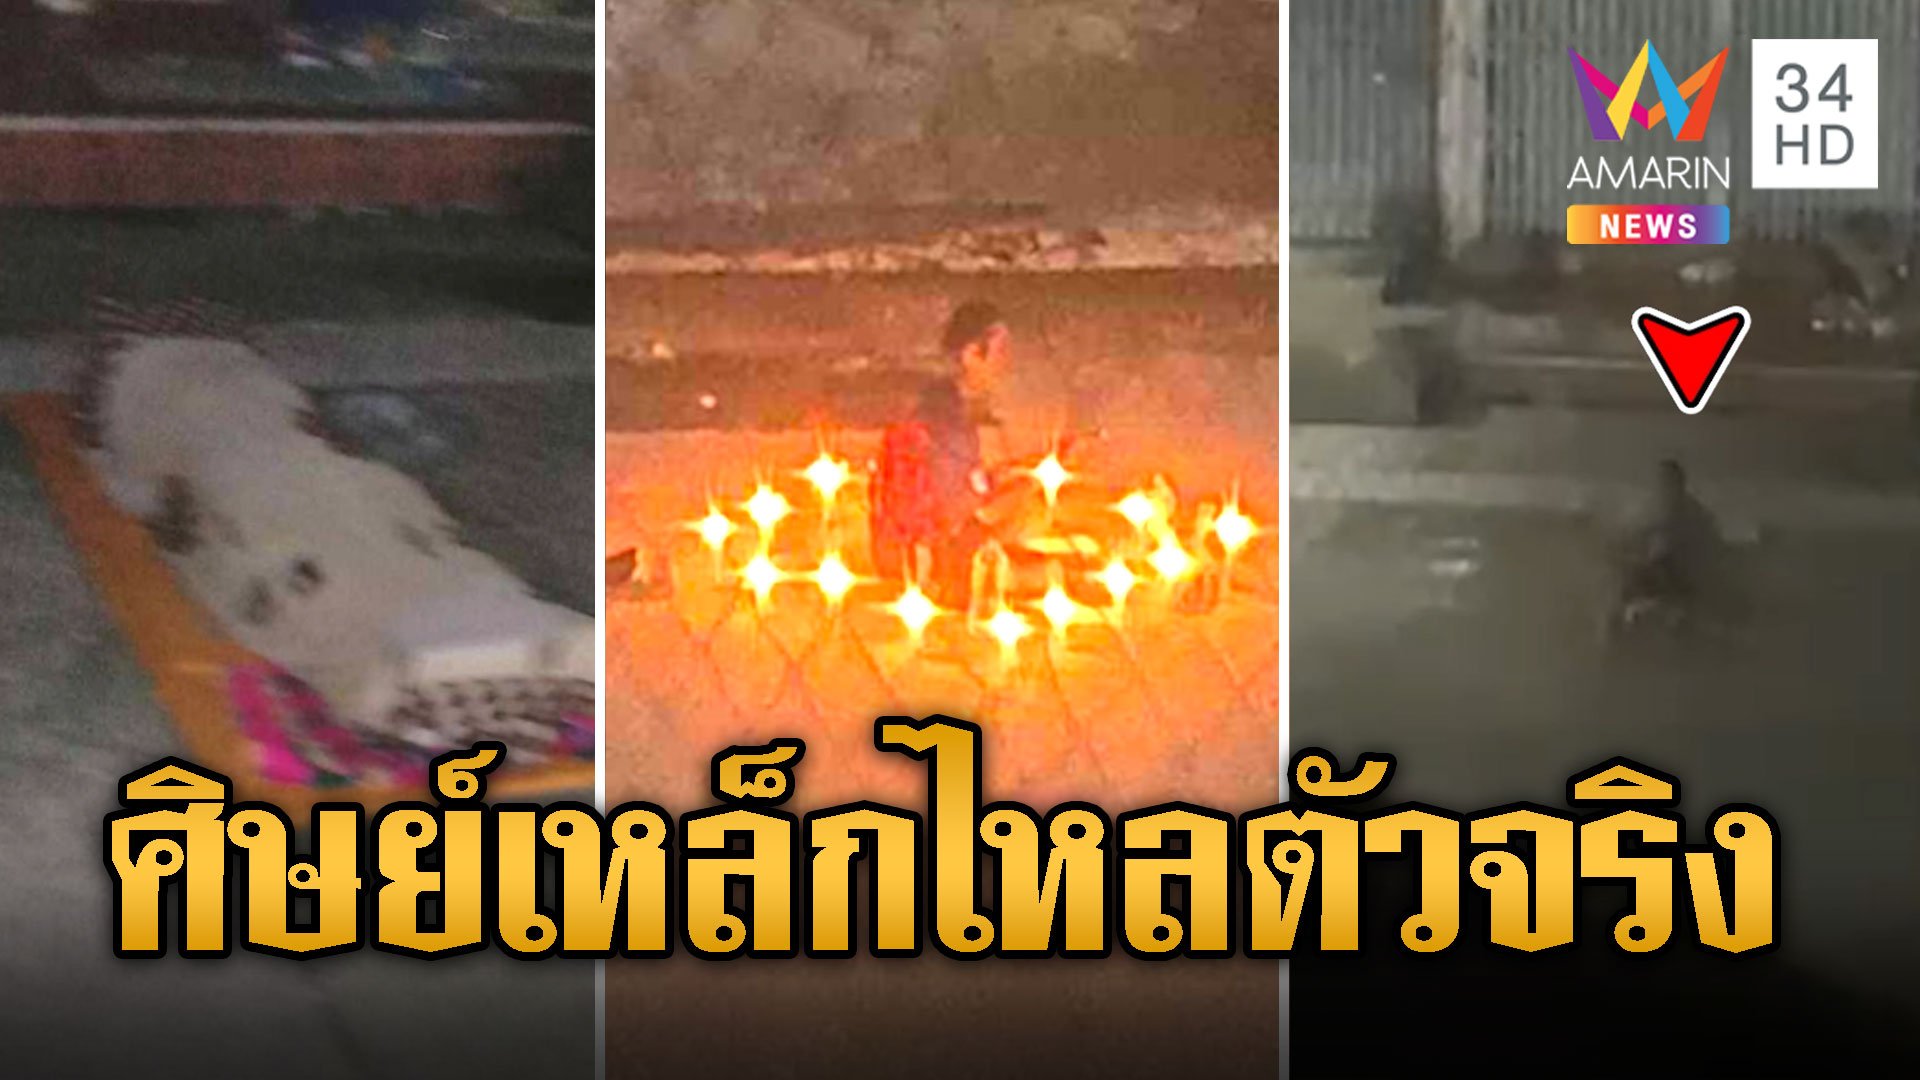 ชาวบ้านไม่ทน! หนุ่มเพี้ยนทำพิธีบูชาเหล็กไหลกลางถนน  | ข่าวเที่ยงอมรินทร์ | 30 พ.ค. 67 | AMARIN TVHD34